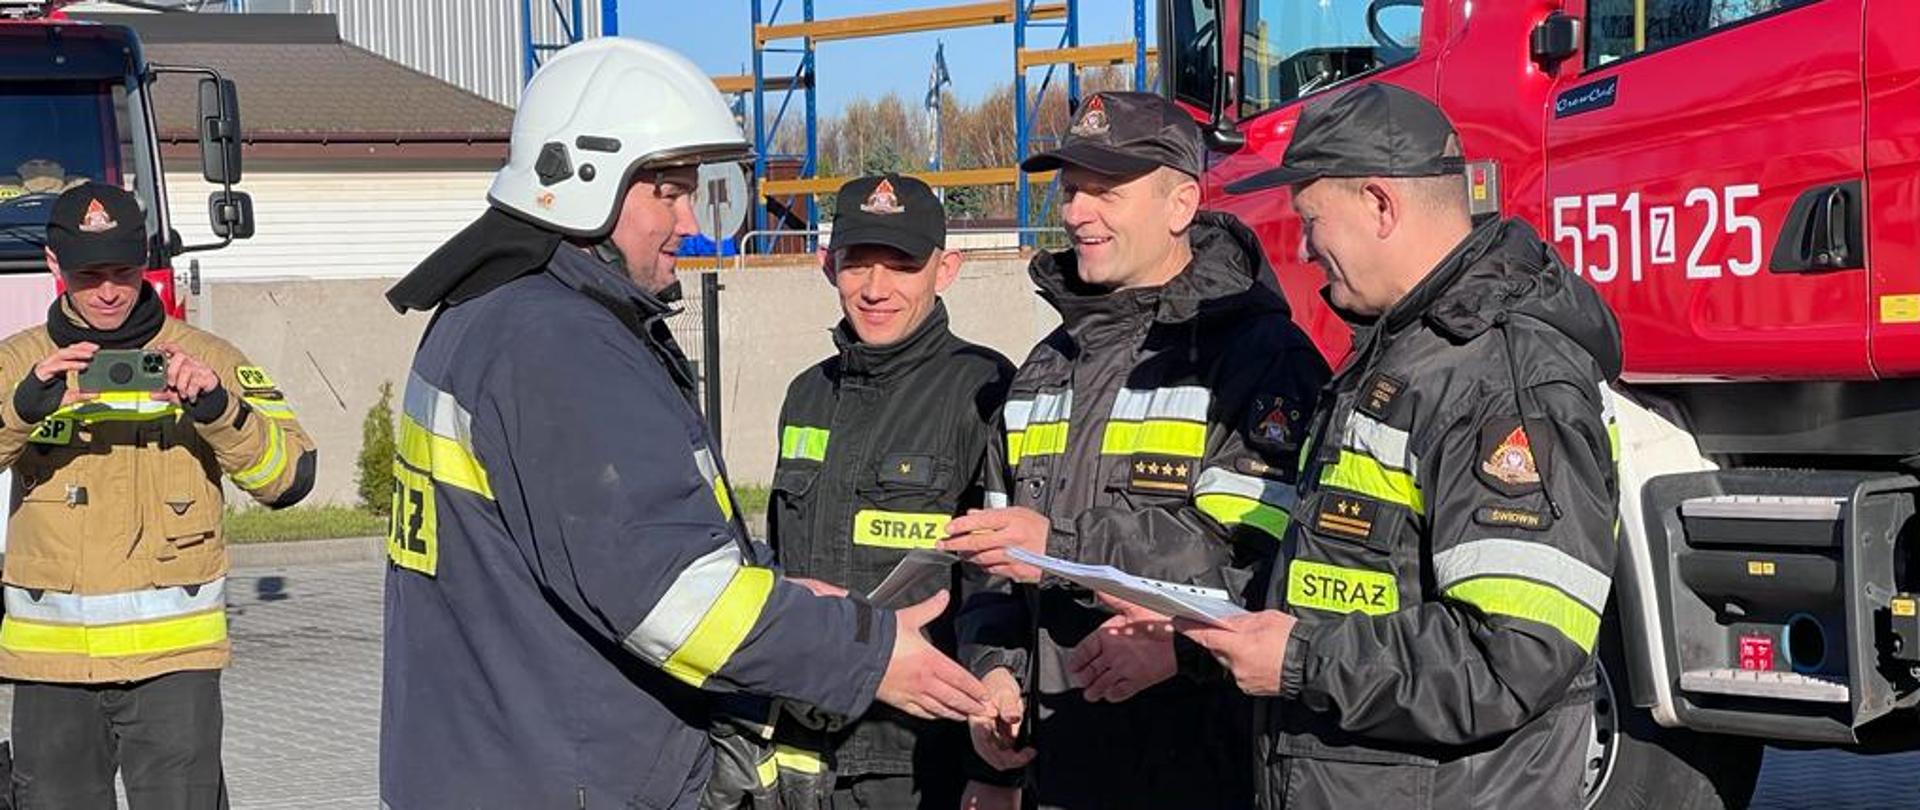 Na zdjęciu widać strażaków Komendy Powiatowej Państwowej Straży Pożarnej którzy, gratulują oraz wręczają certyfikat ukończenia szkolenia strażakowi OSP.